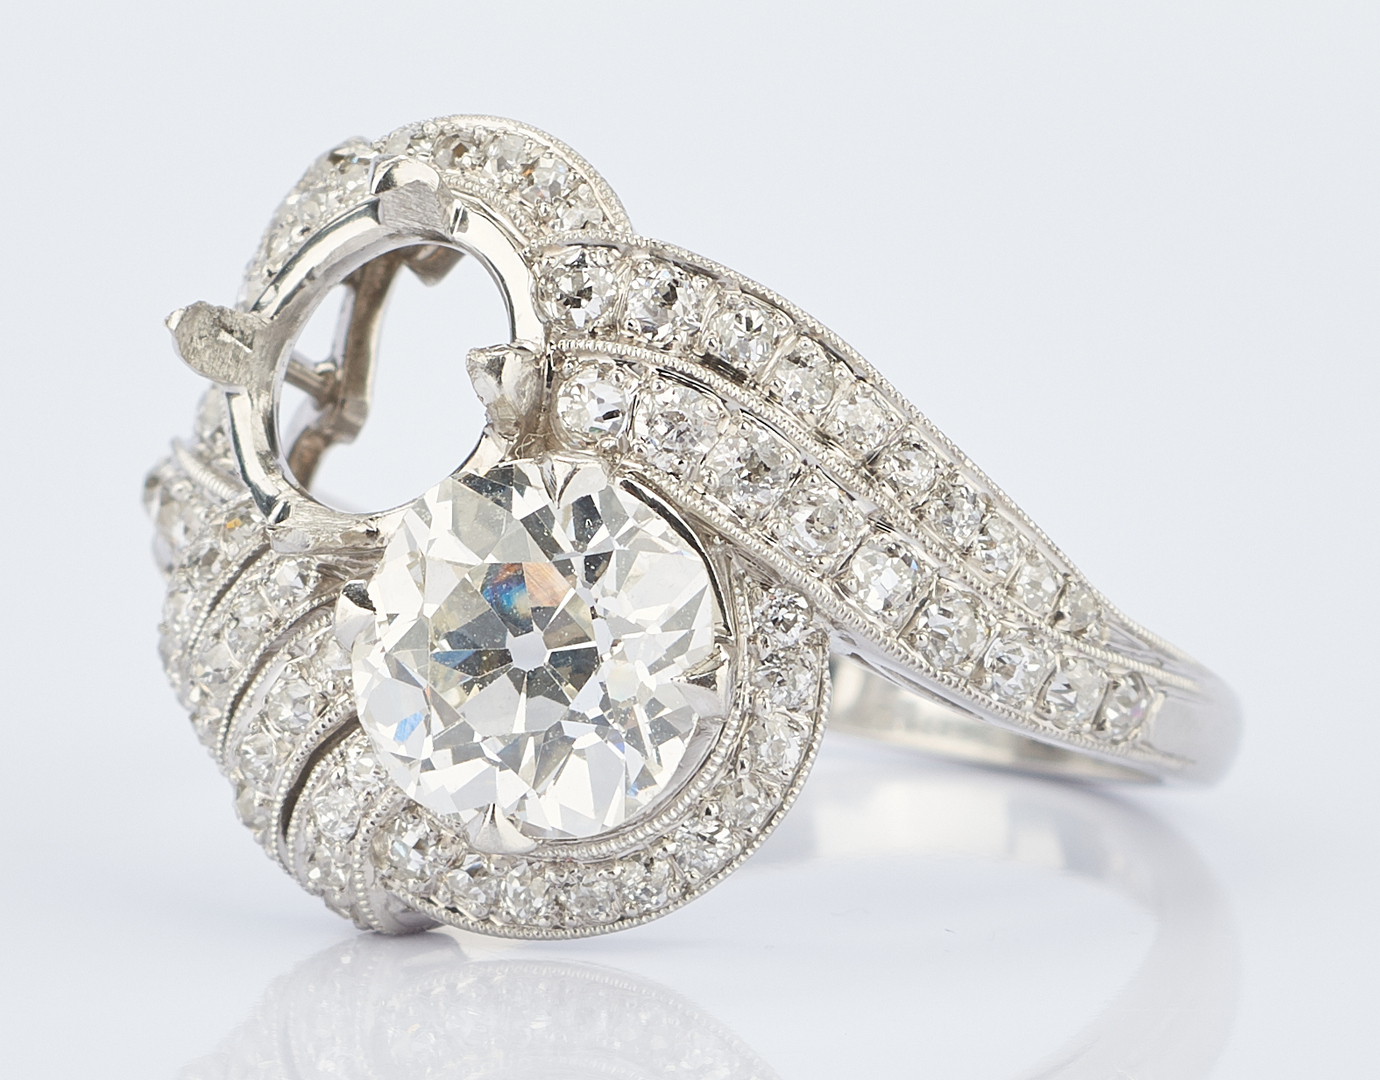 Lot 217 Ladies Platinum Diamond Ring, 1.8 Carats Case Auctions